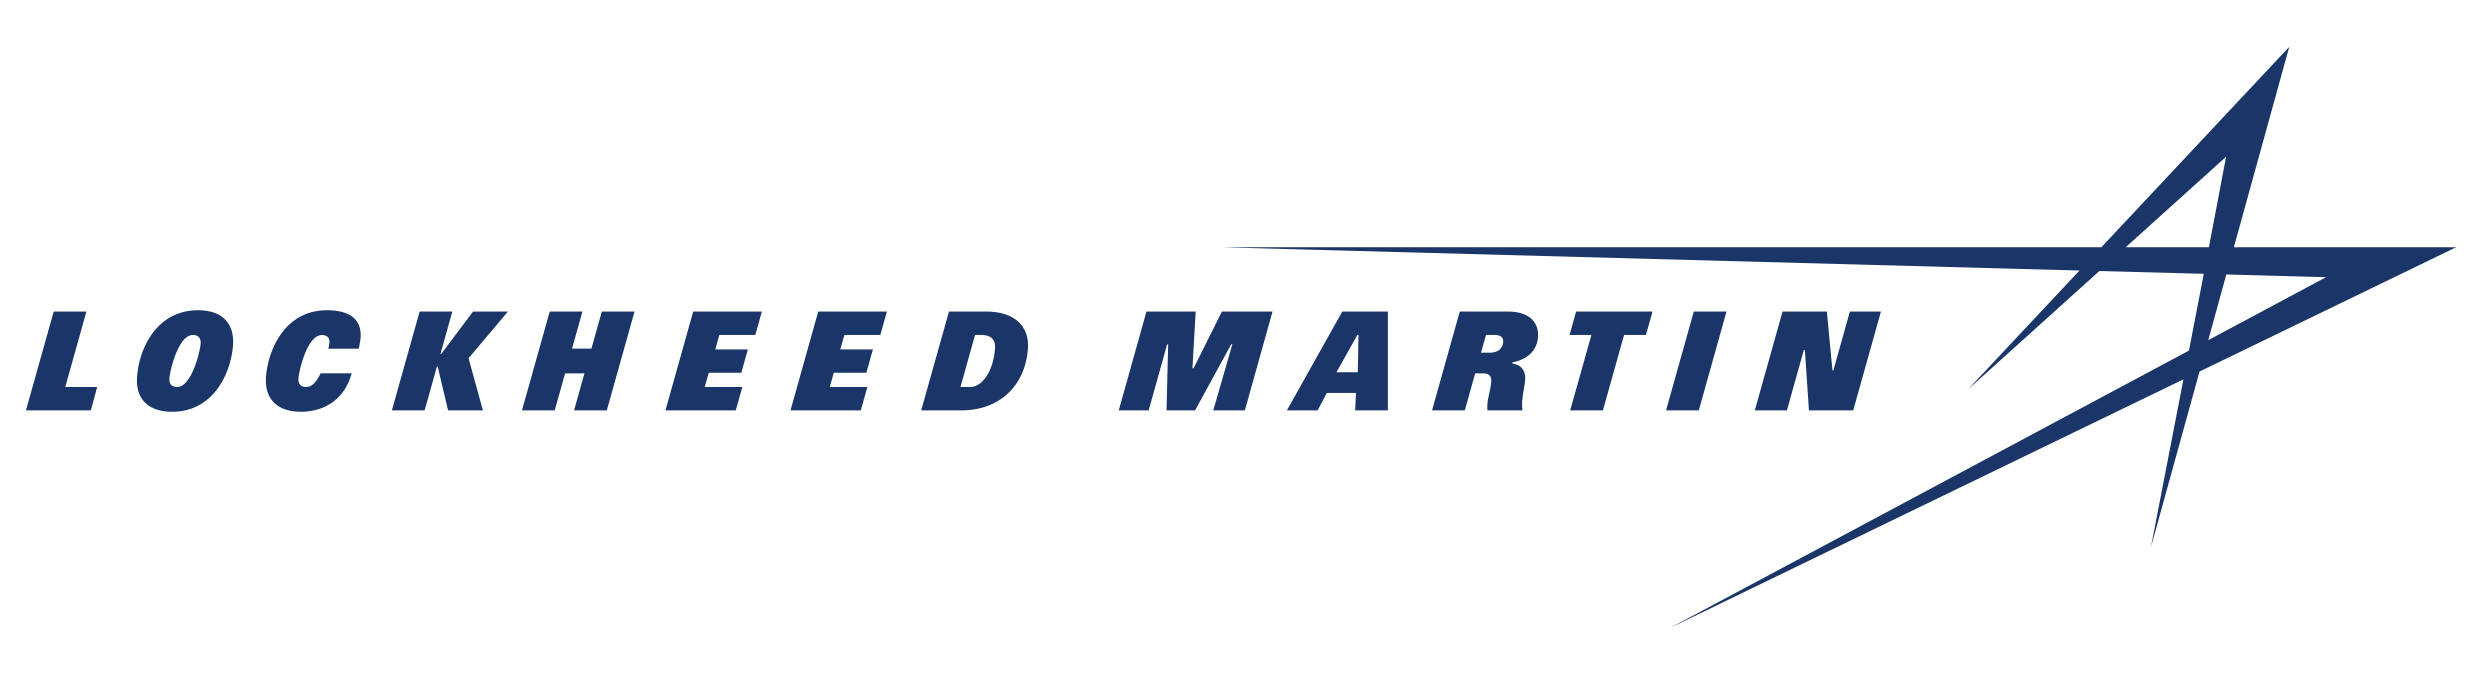 Lockheed-martin-logo_2480x674